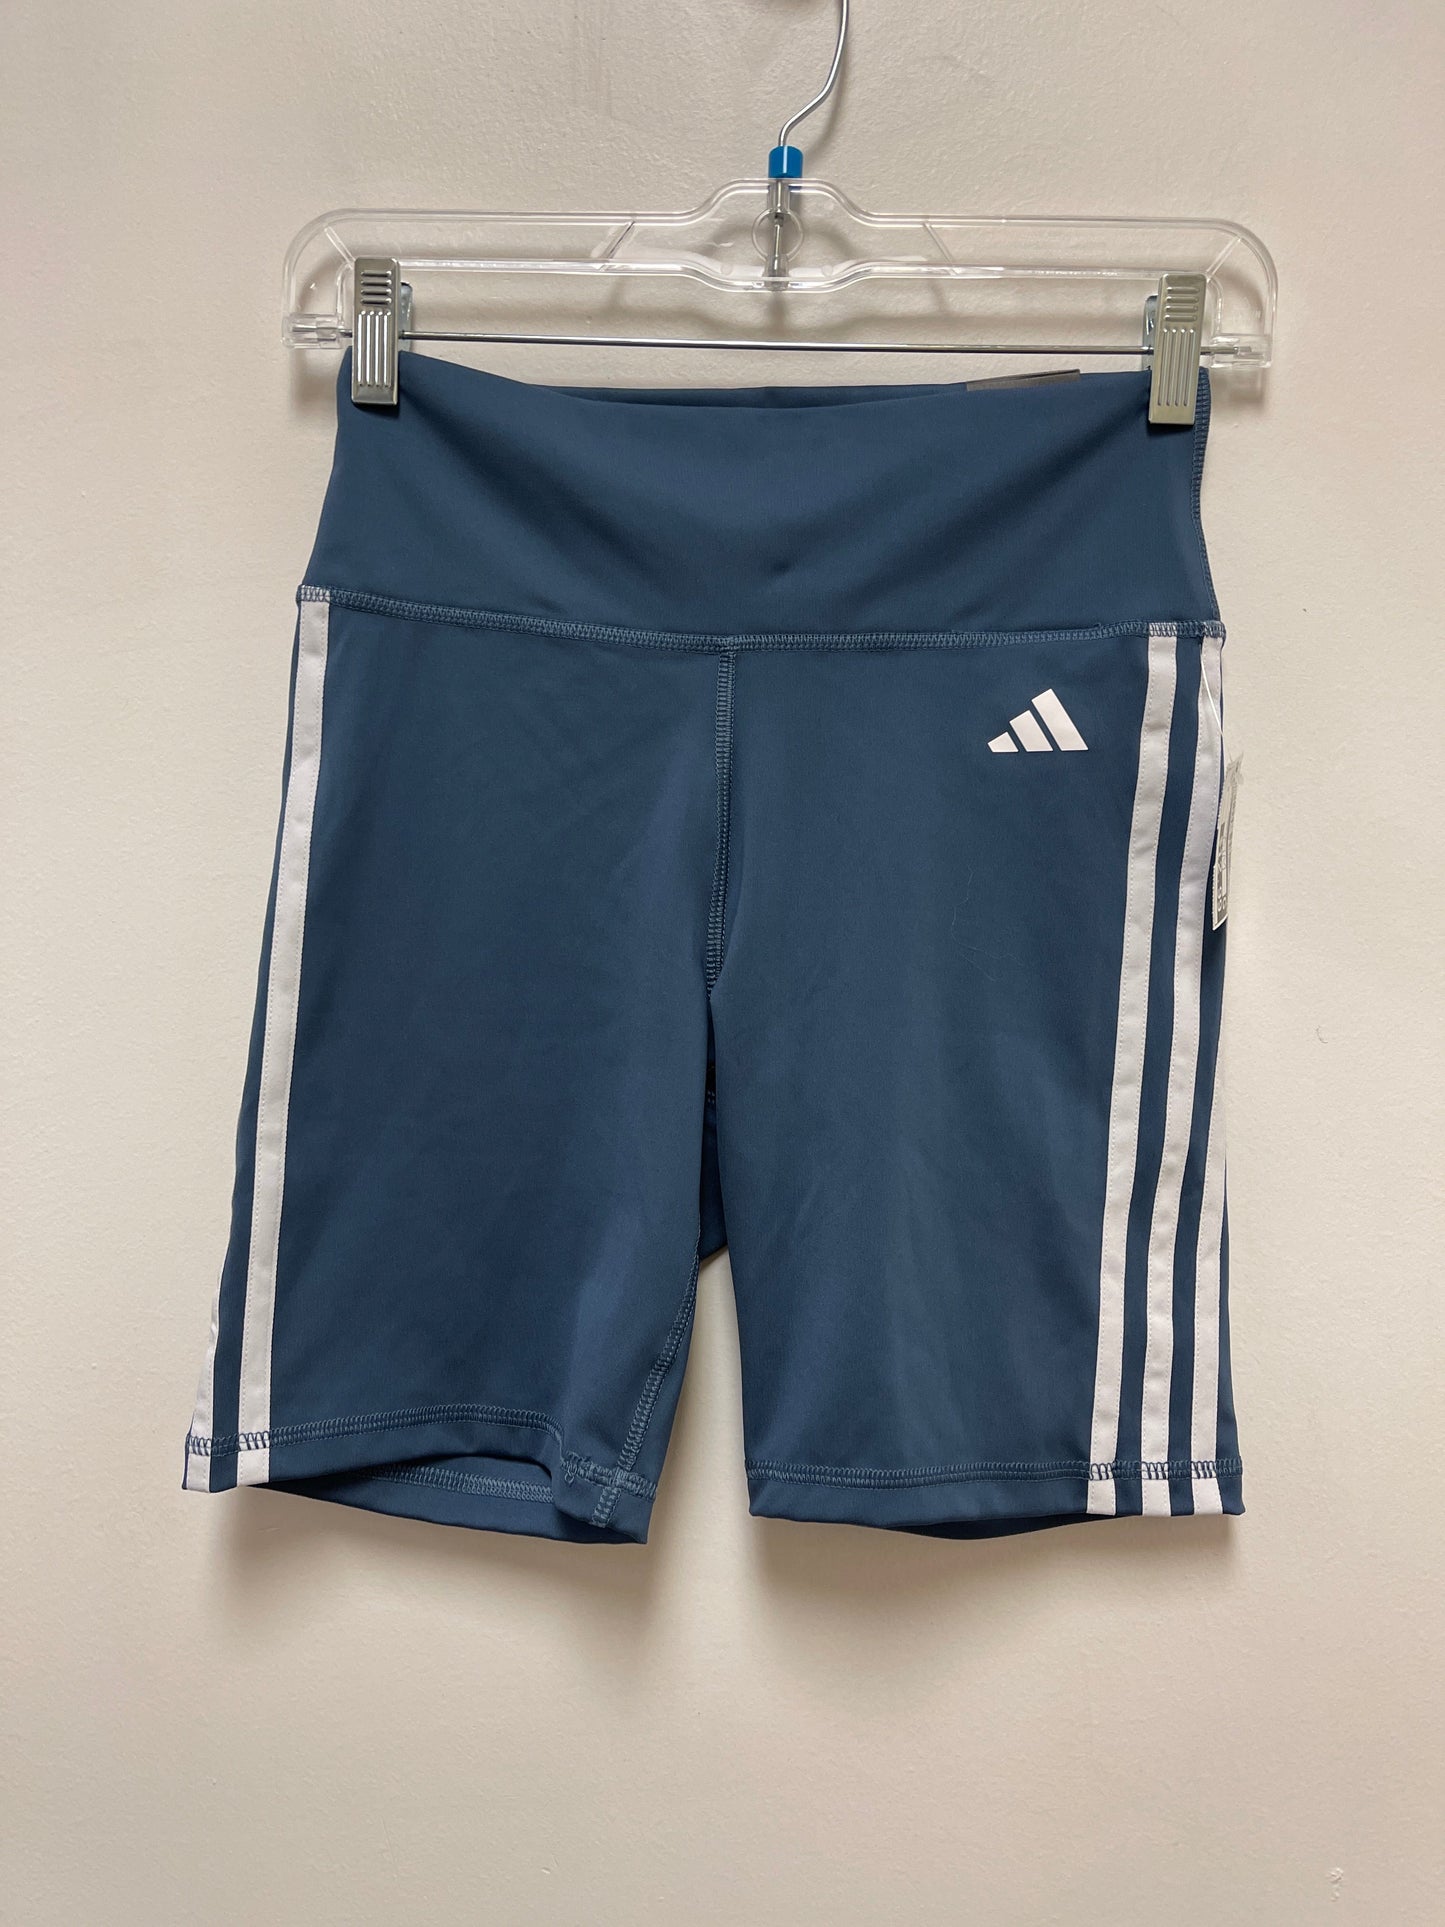 Blue Athletic Shorts Adidas, Size S